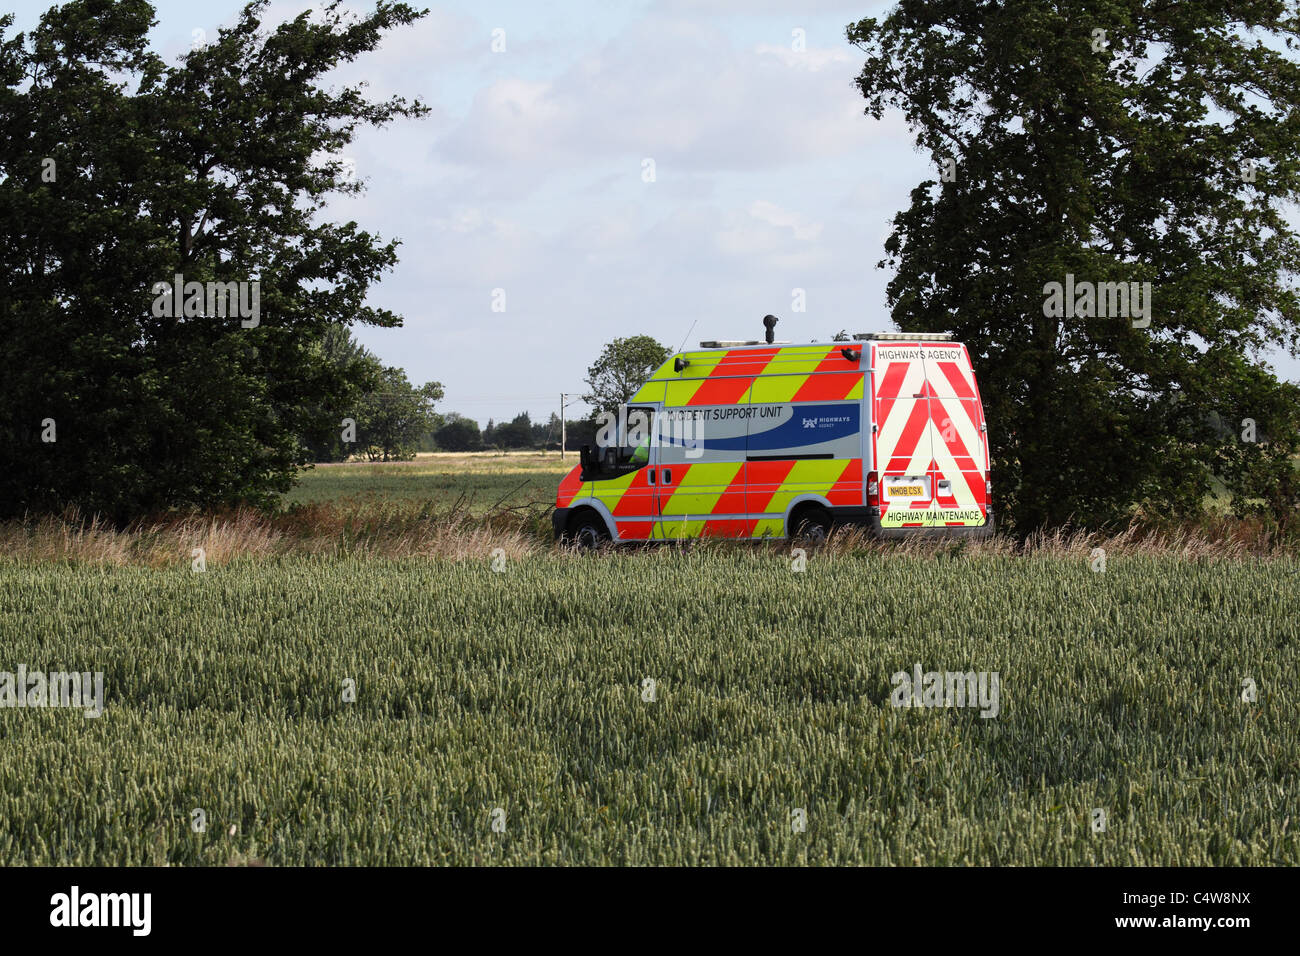 Highways incident van on country lane Milton Cambridgeshire Stock Photo